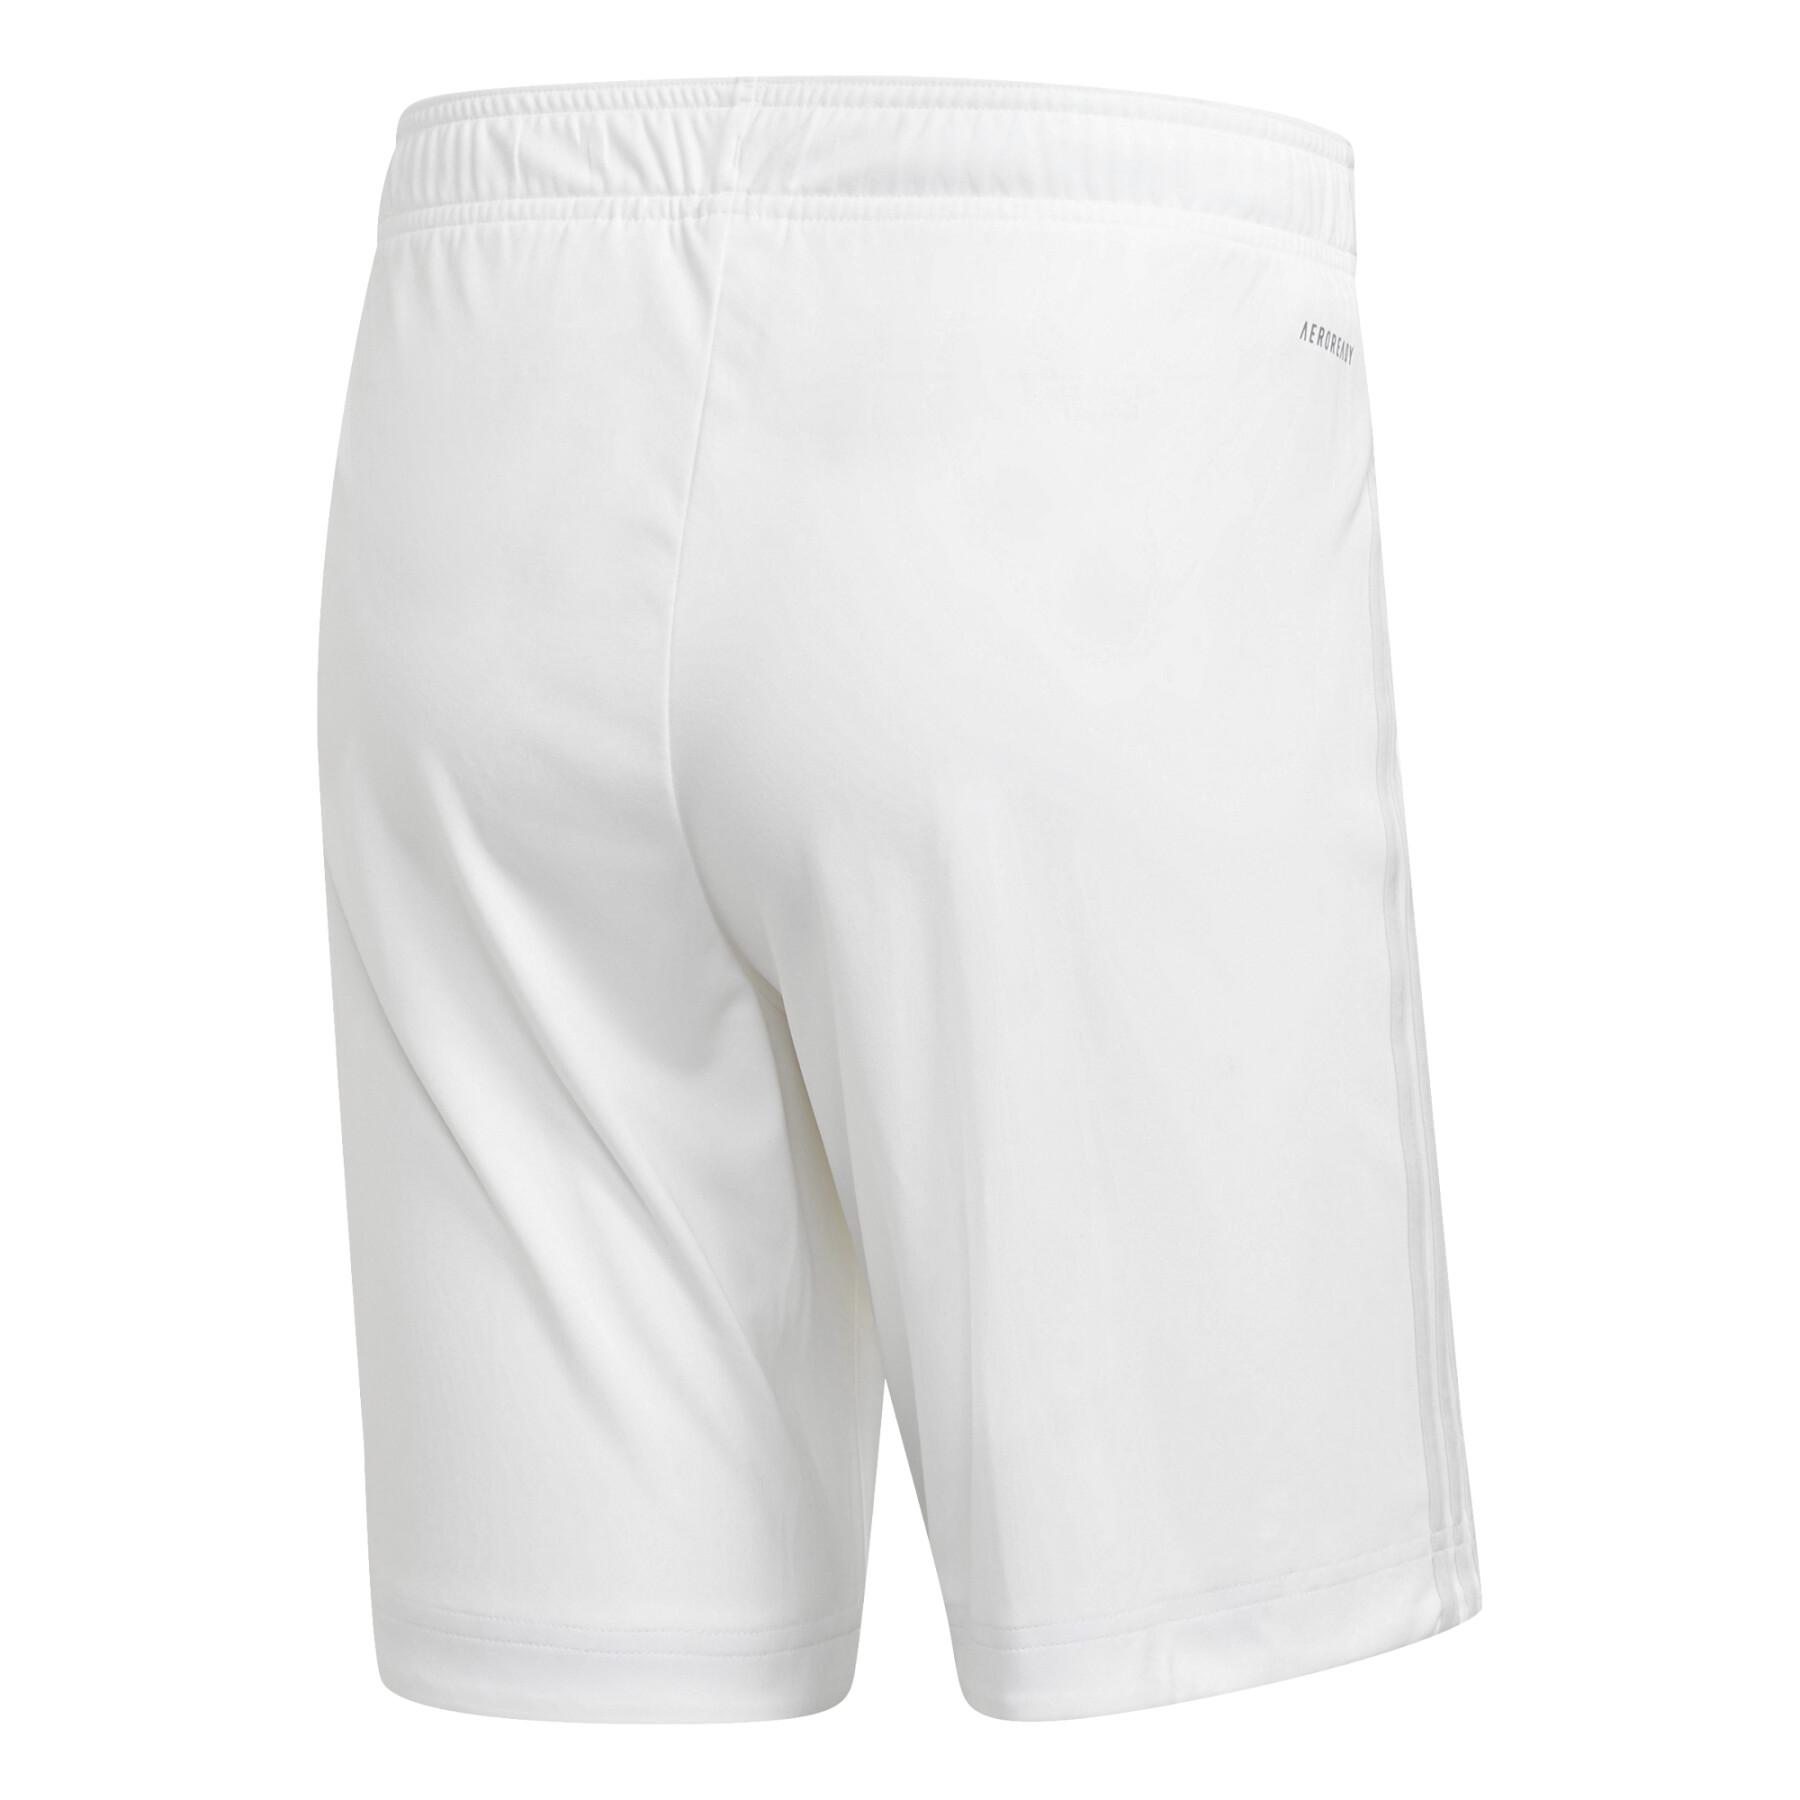 Outdoor shorts bayern 2020/21